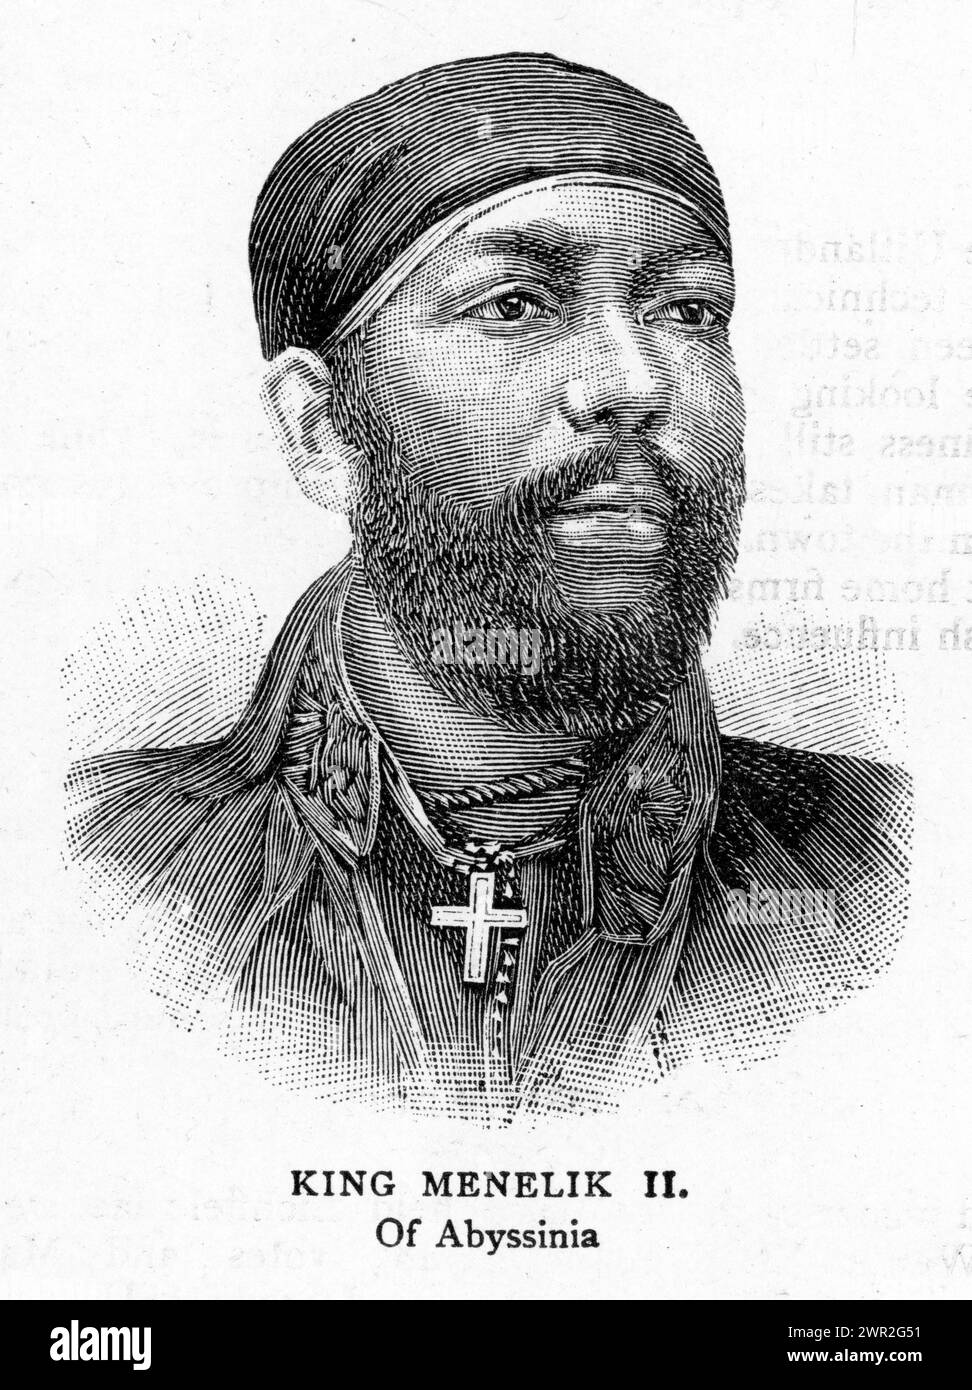 Porträt von König Menelik II. Von Abessinien, sieger der Schlacht von Adwa. Veröffentlicht um 1896. Stockfoto